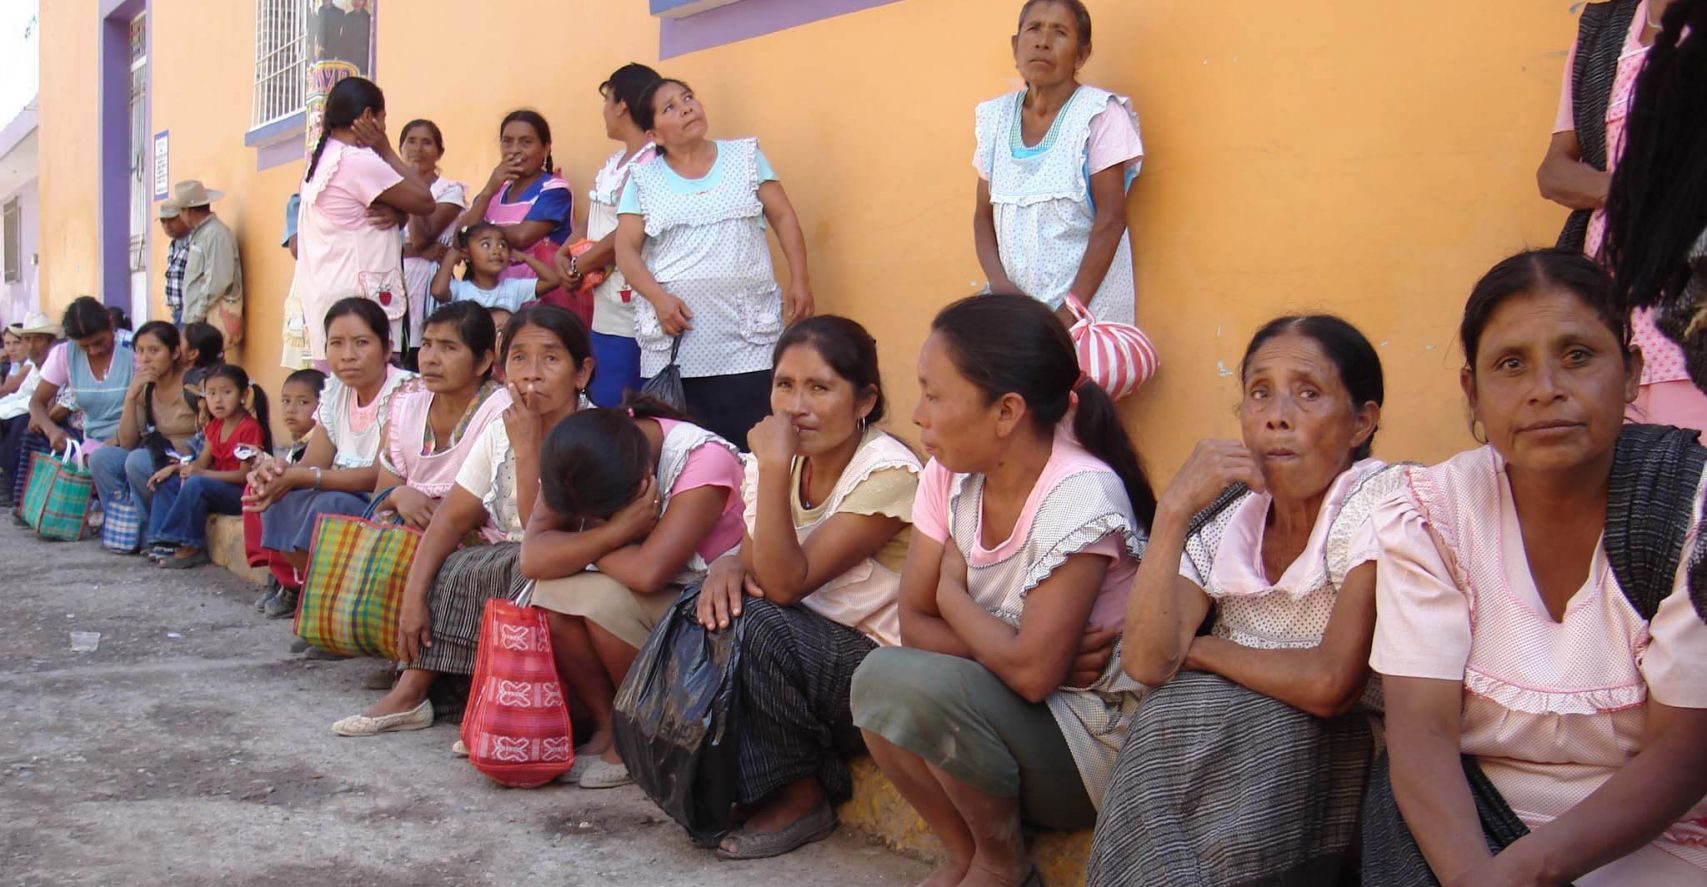 Acusan a funcionarios de compartir fotos íntimas de mujeres indígenas